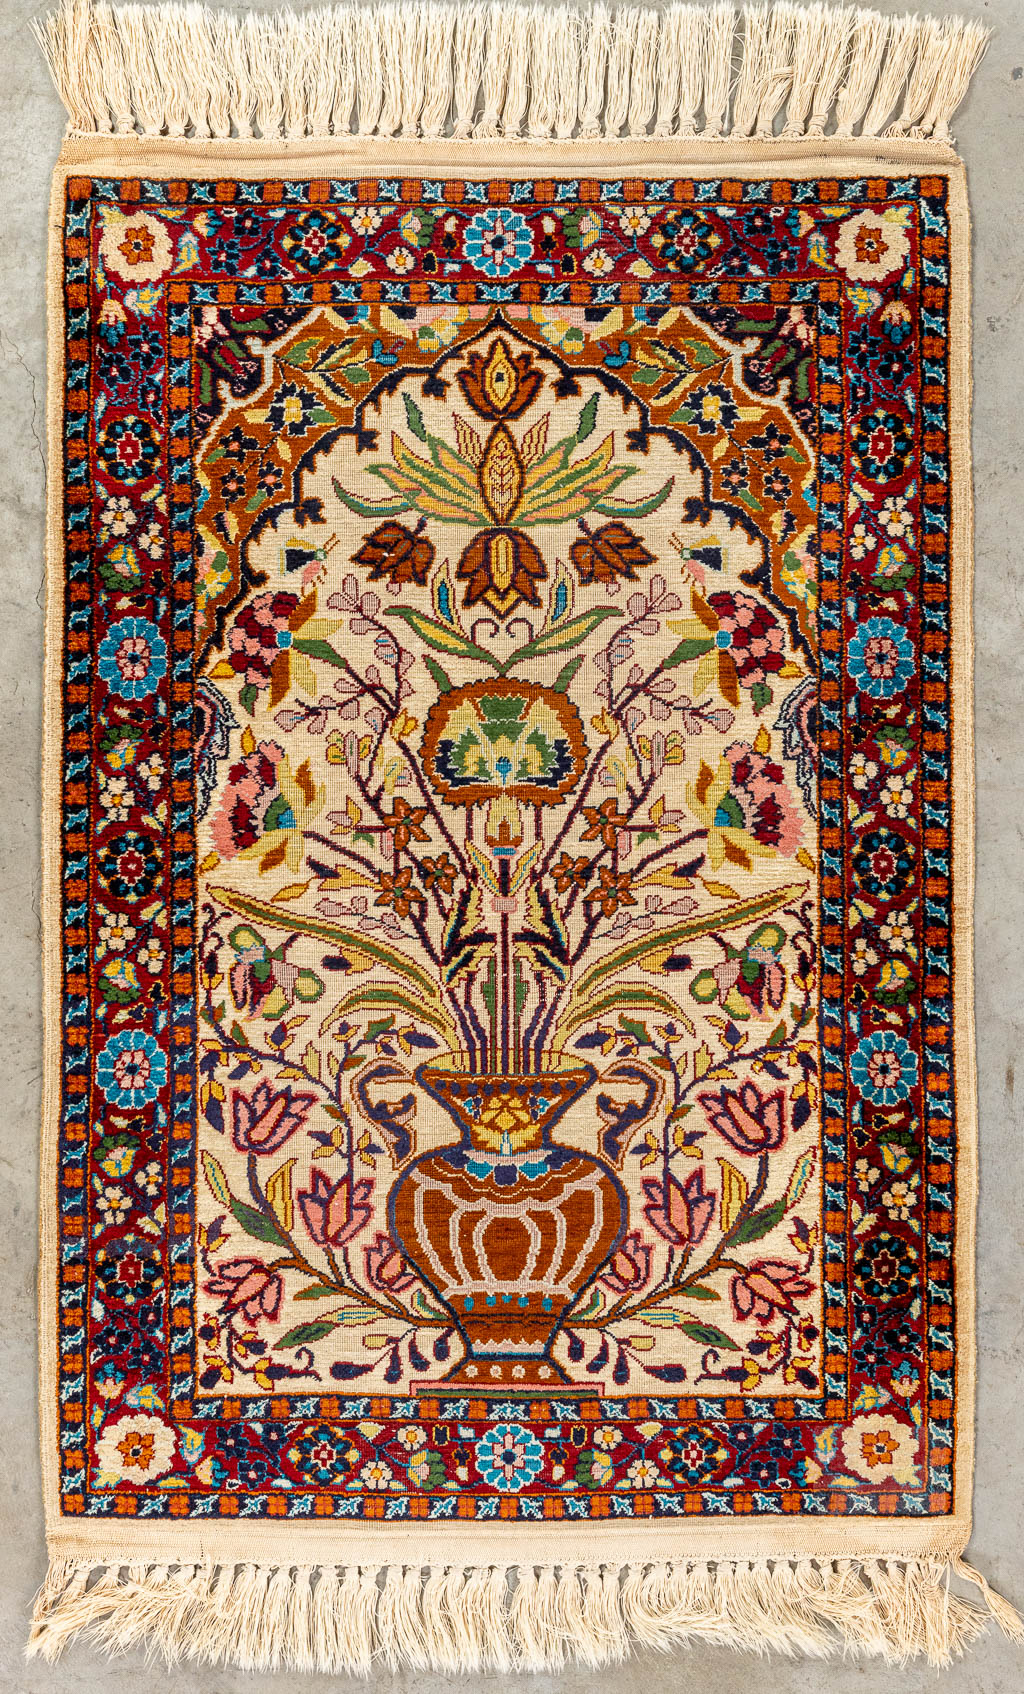 An oriental hand-made carpet made of Kashmir and wool. (90 x 61 cm)